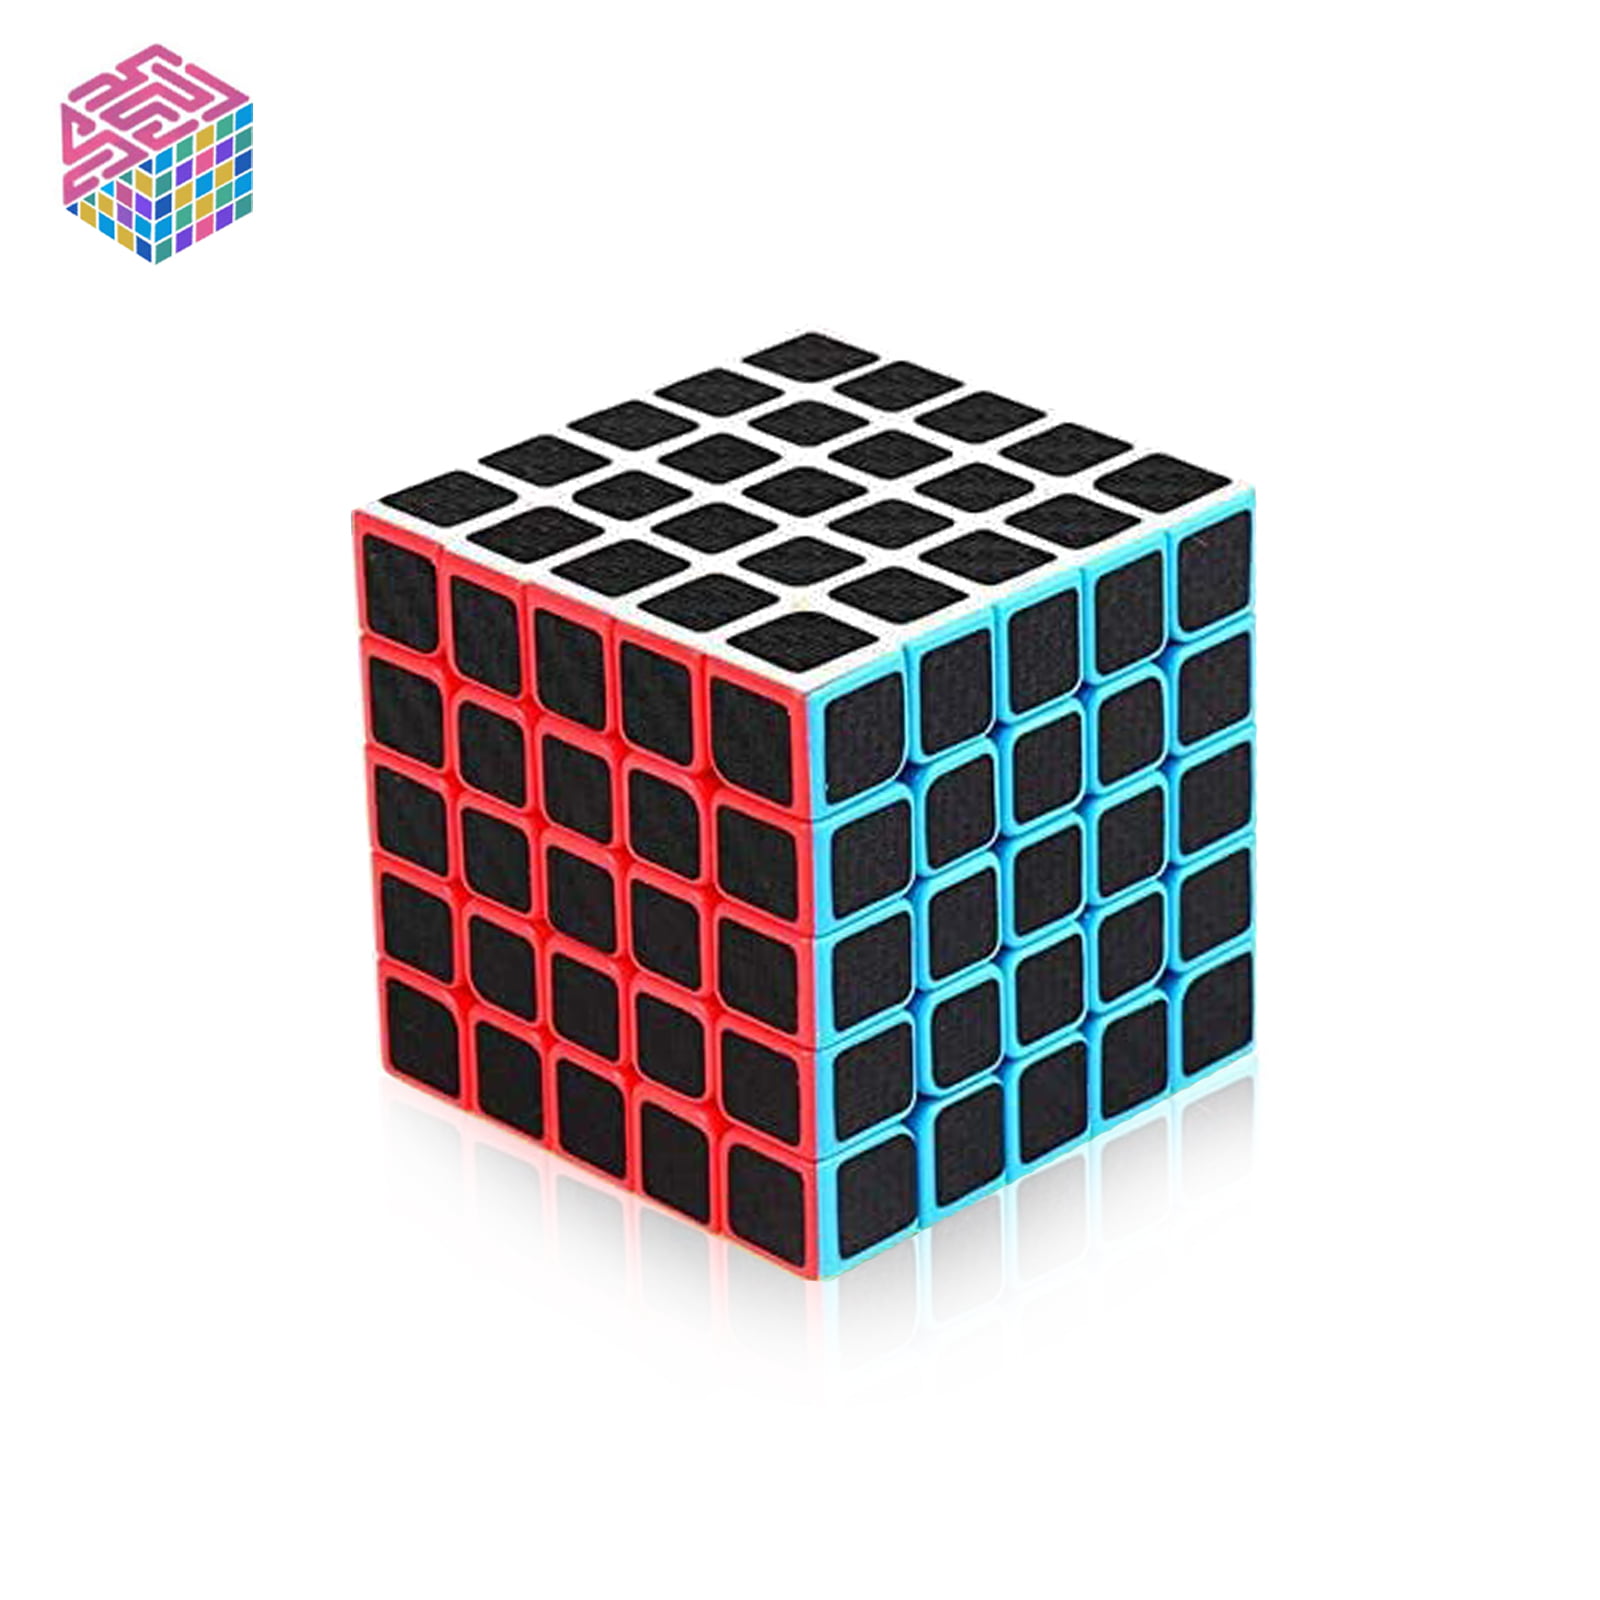 Kids Rubiks Cube Fun Original Toy Rubic Magic Mind Game Classic Rubix Puzzle 3X3 